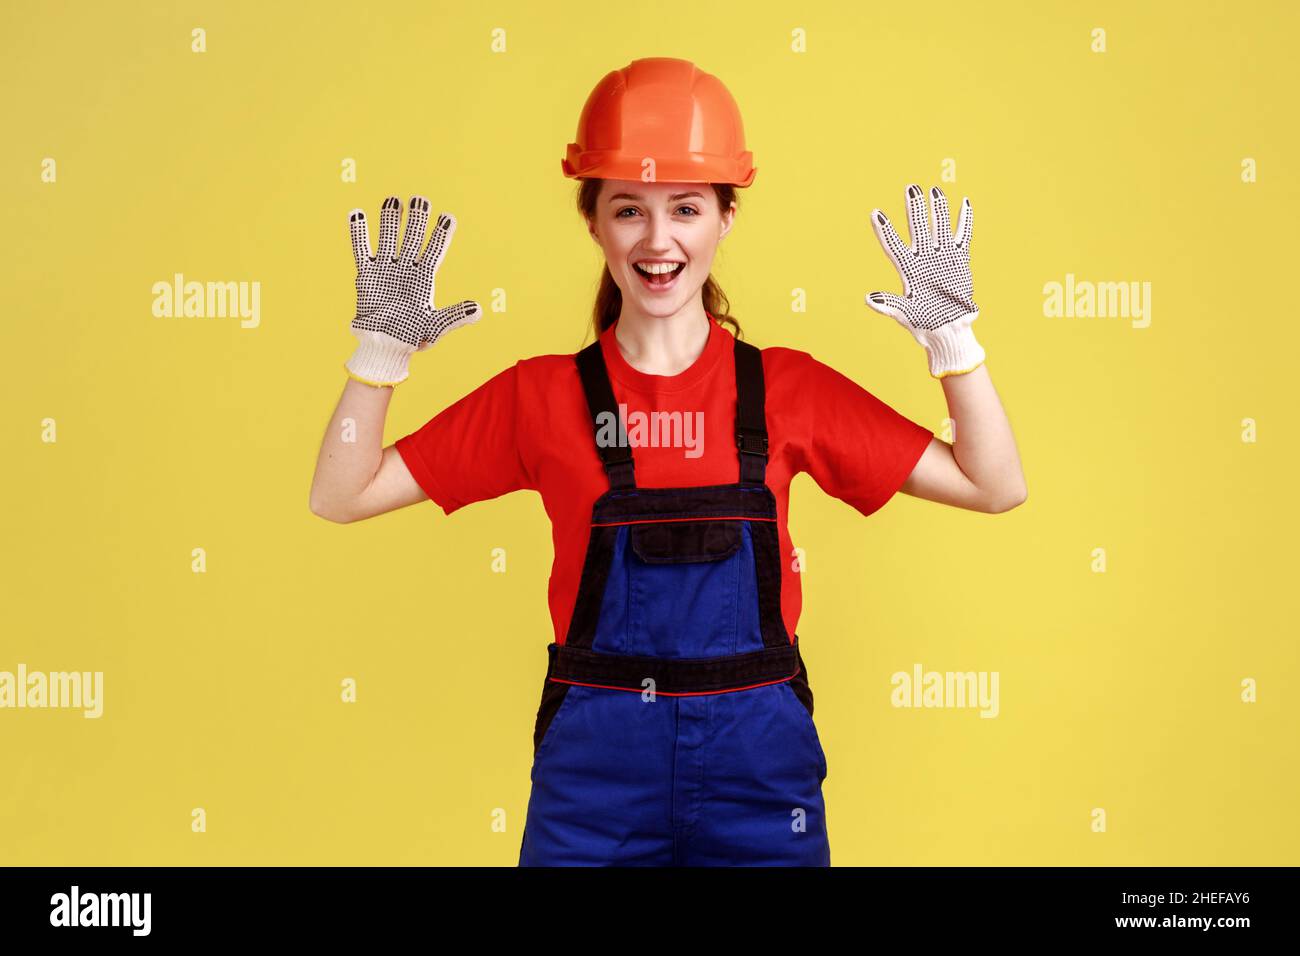 Porträt einer aufgeregten Arbeiterin, die mit erhobenen Armen steht und ihre Handschuhe zum Schutz der Hände zeigt, während die Arbeit Overalls und Schutzhelm trägt. Innenaufnahme des Studios isoliert auf gelbem Hintergrund Stockfoto